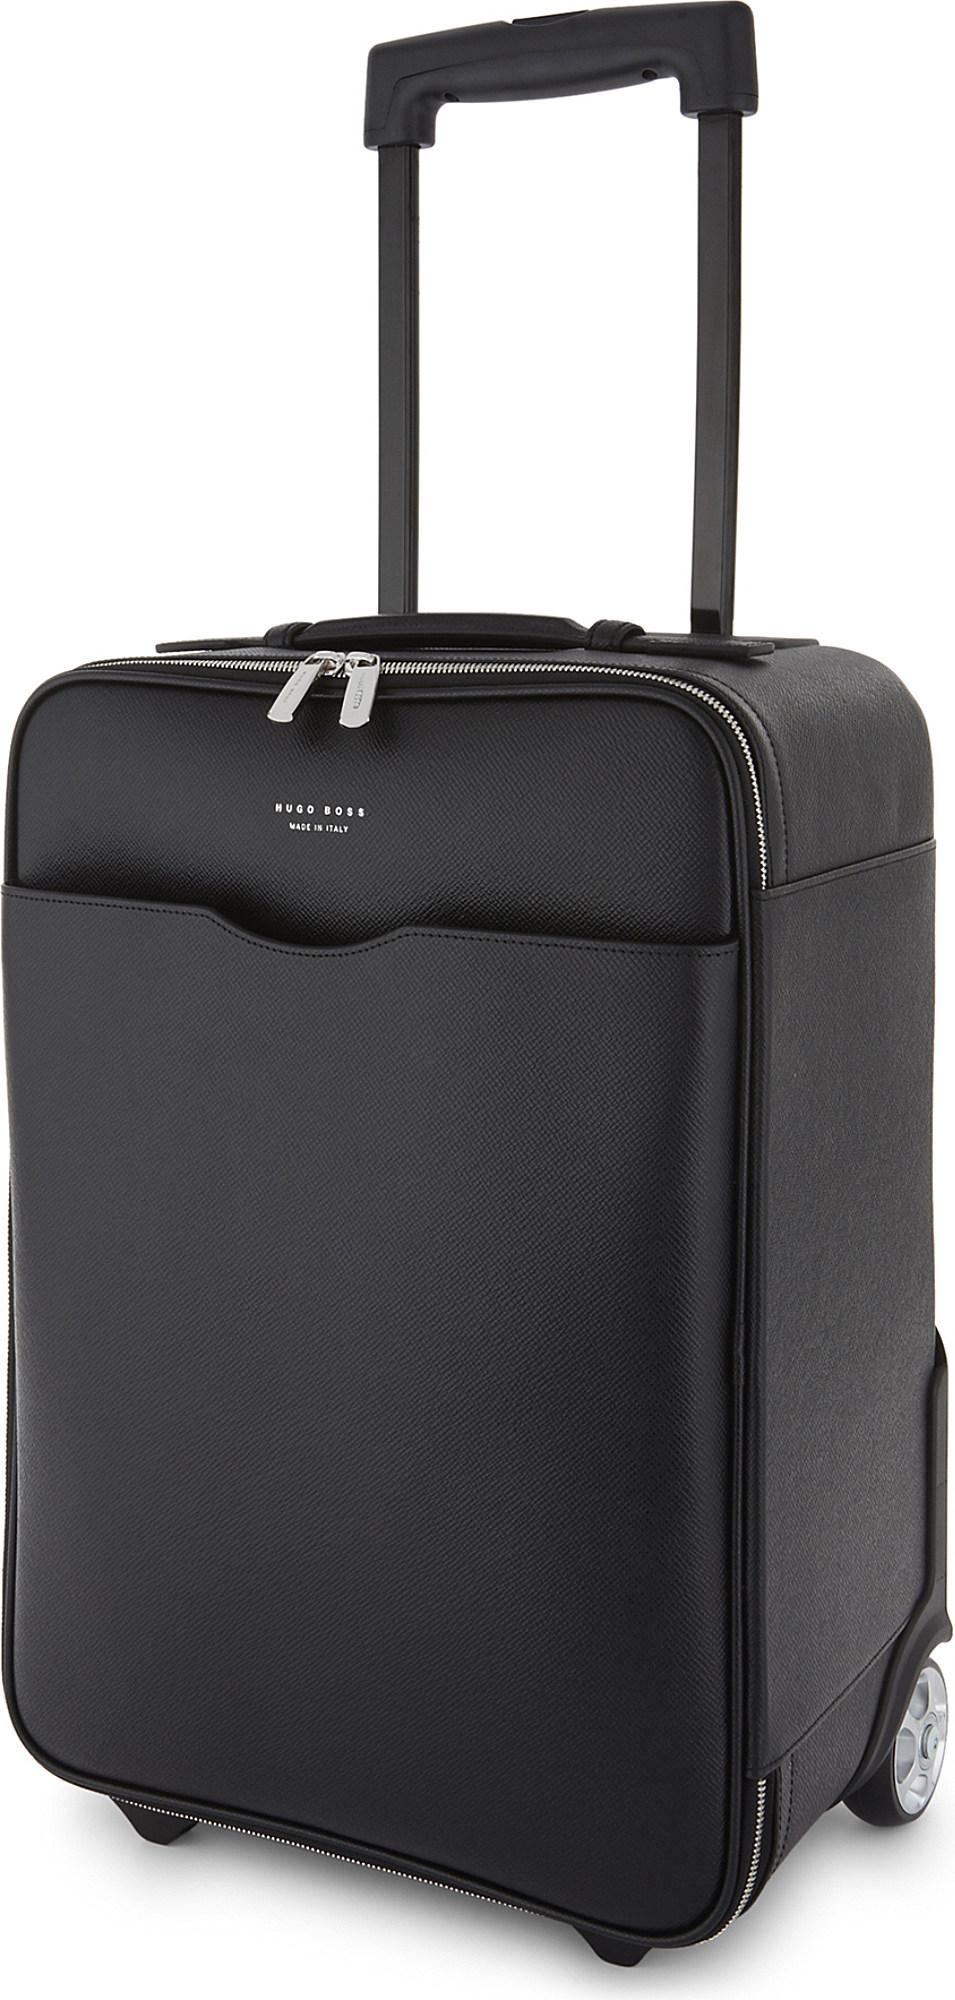 Hugo Boss Suitcase Sale Deals, SAVE 45% - fearthemecca.com